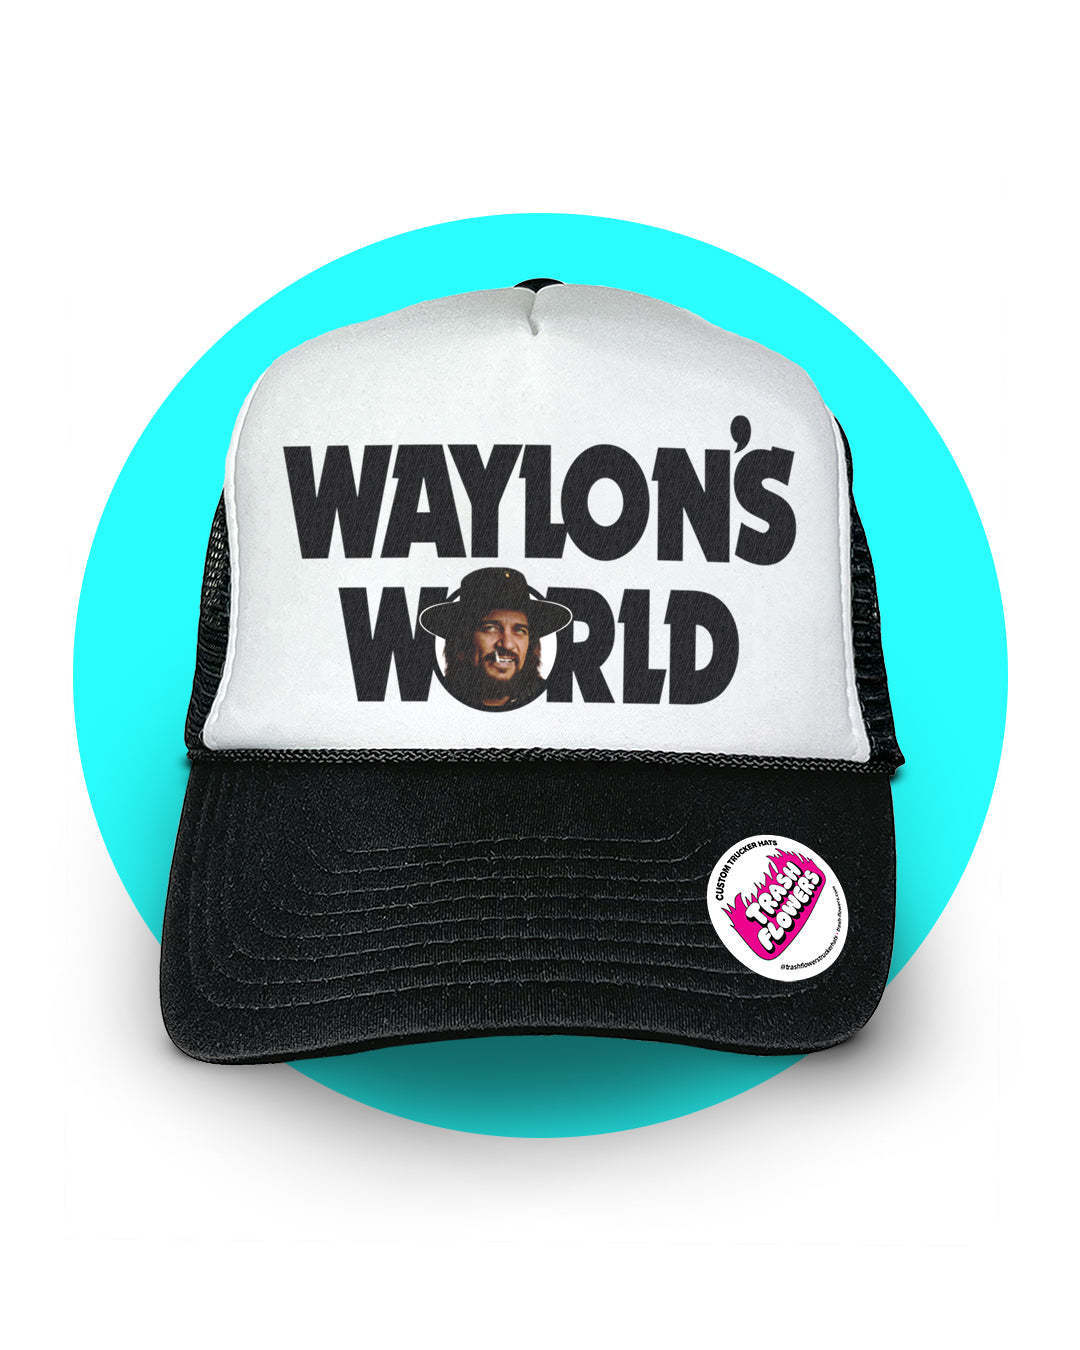 Waylon's World Trucker Hat Black